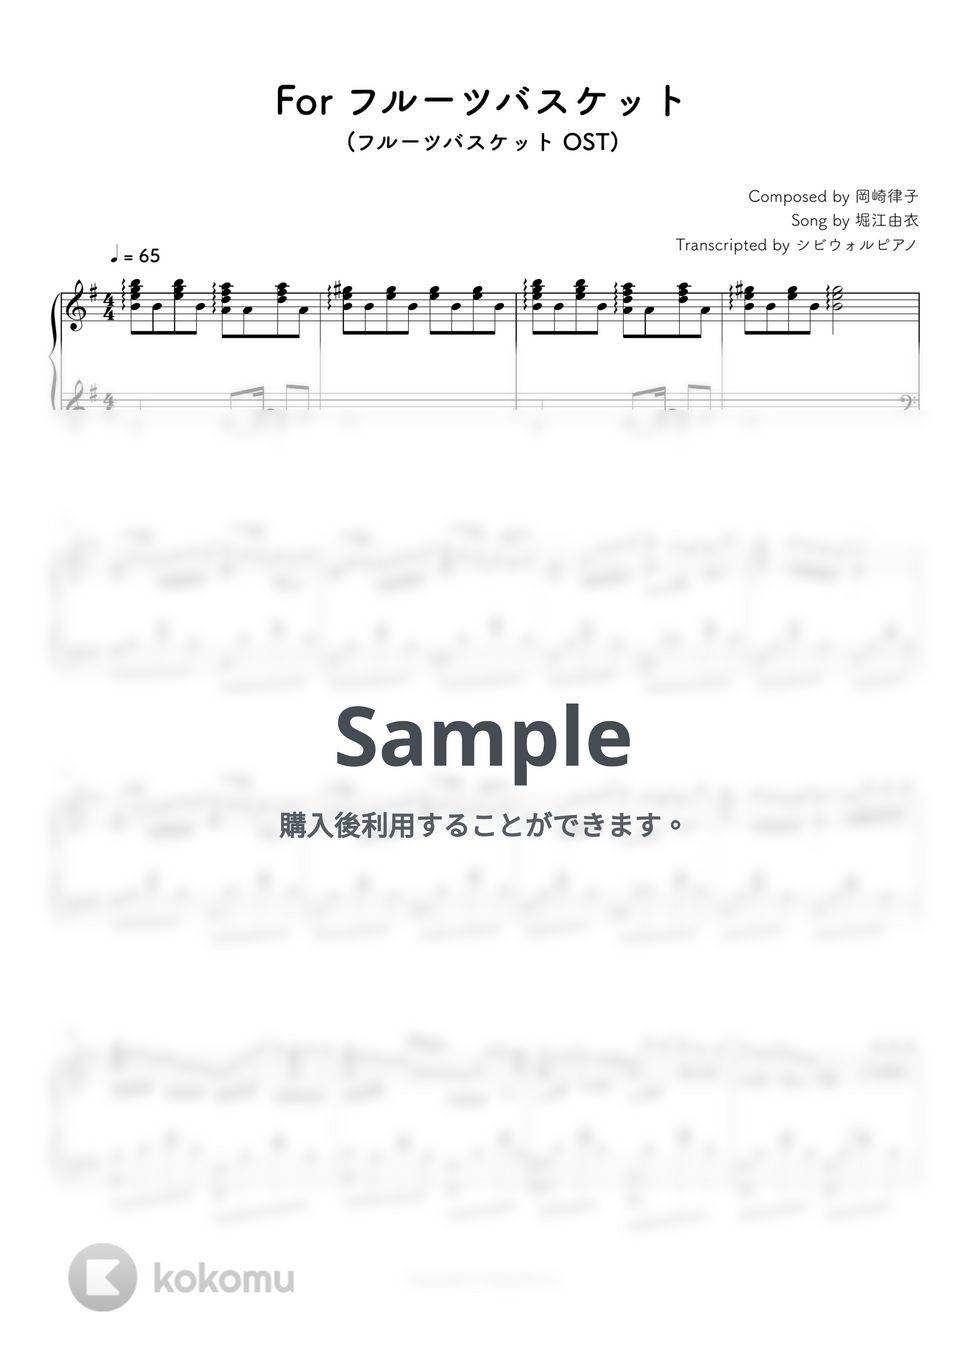 フルーツバスケット - For フルーツバスケット by シビウォルピアノ